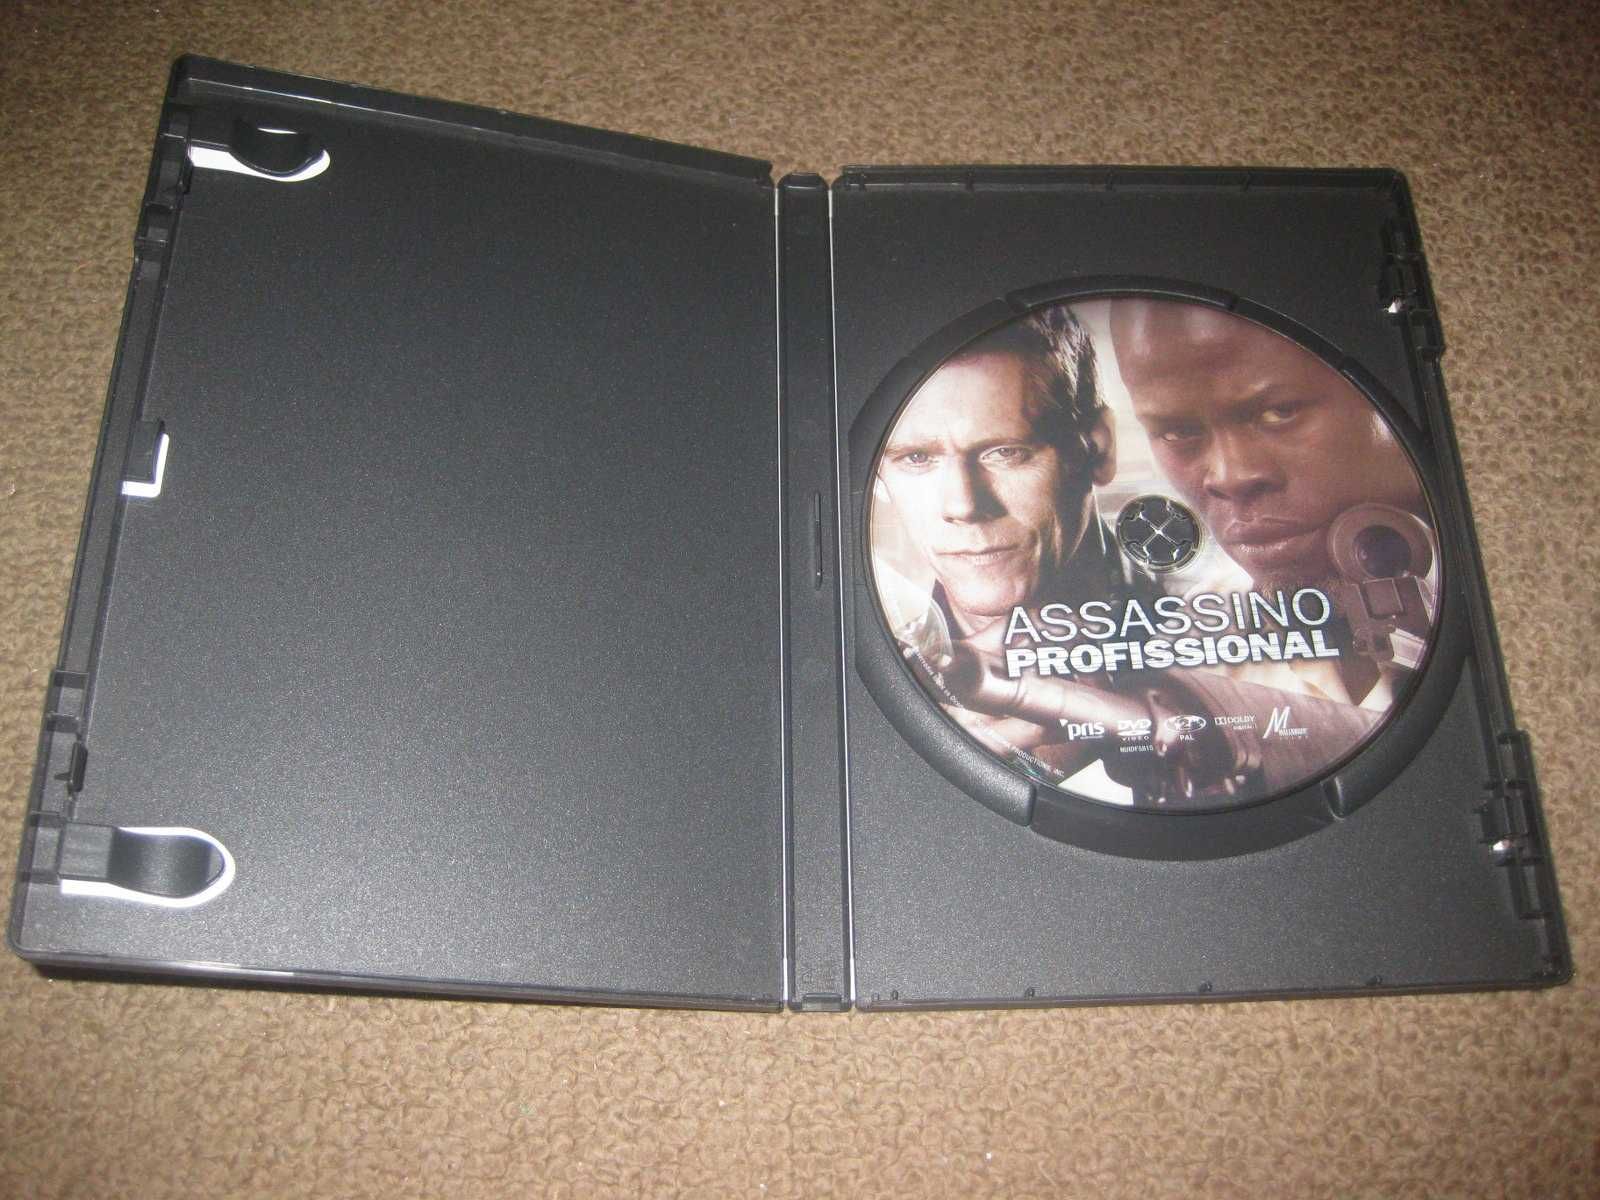 DVD "Assassino Profissional" com Kevin Bacon